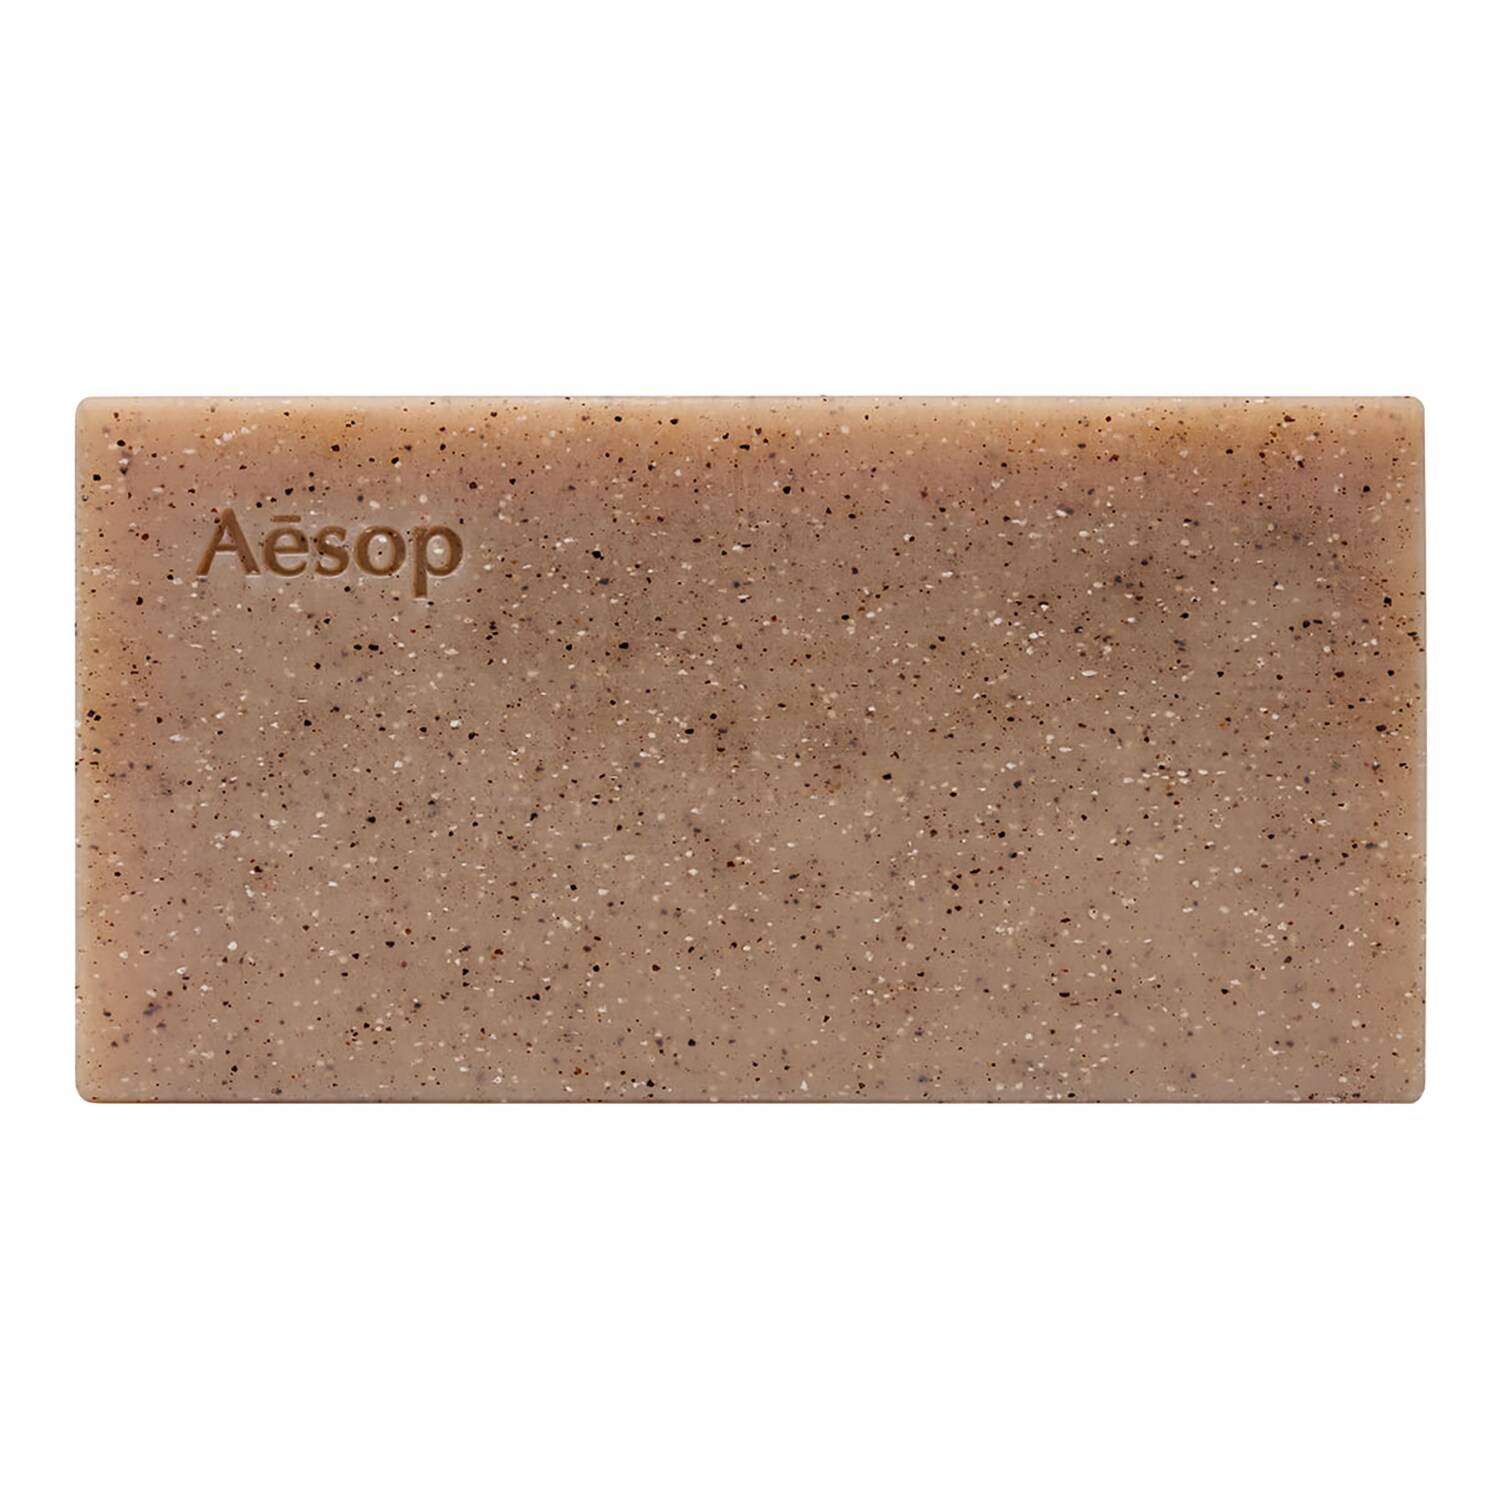 Aesop Polish Bar Soap 150G